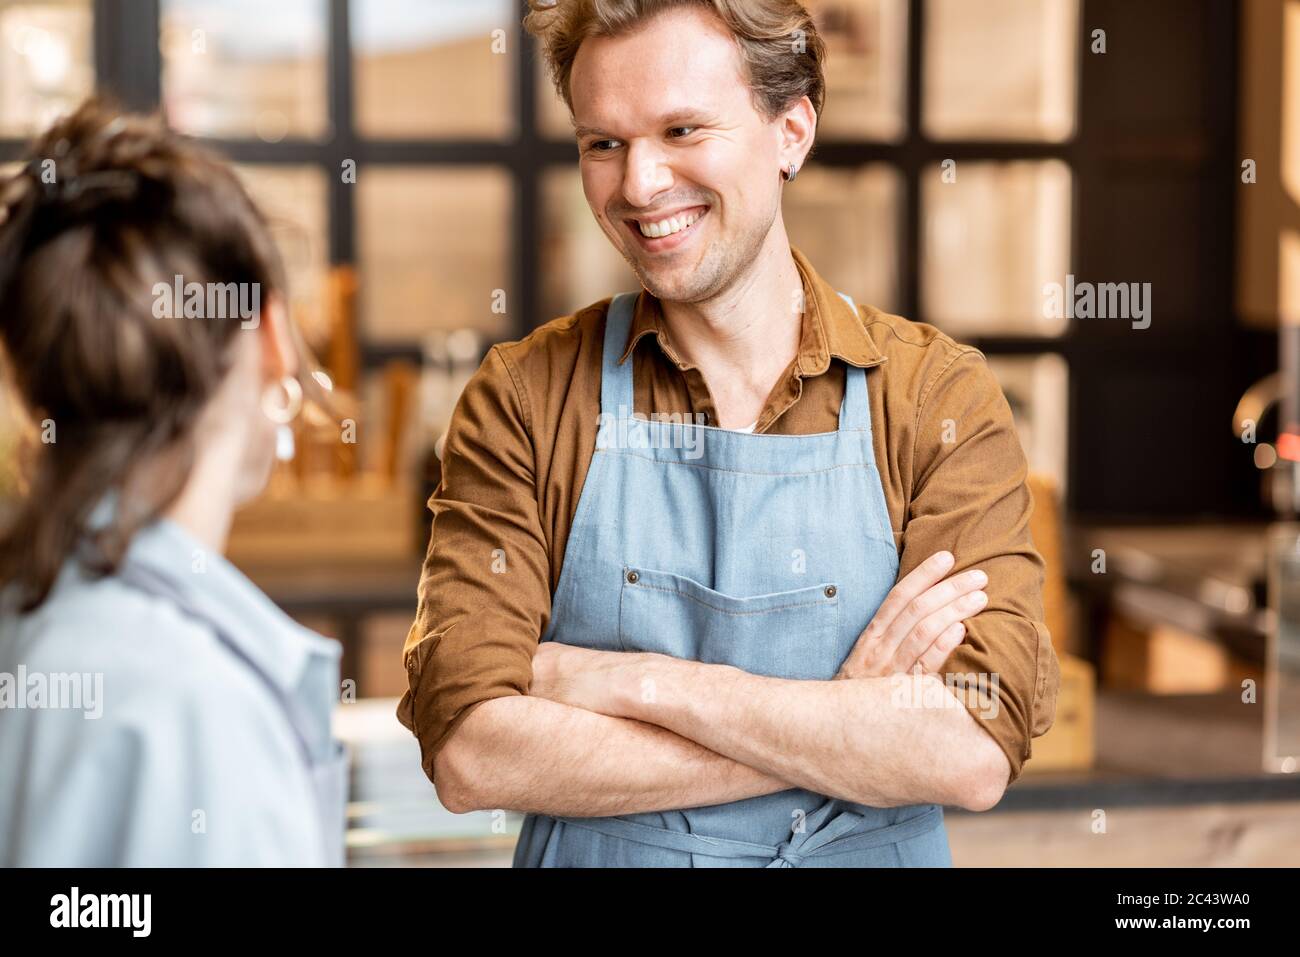 Porträt von zwei fröhlichen Mitarbeitern eines Cafés oder kleinen Ladens, die vor der Theke im Inneren stehen Stockfoto